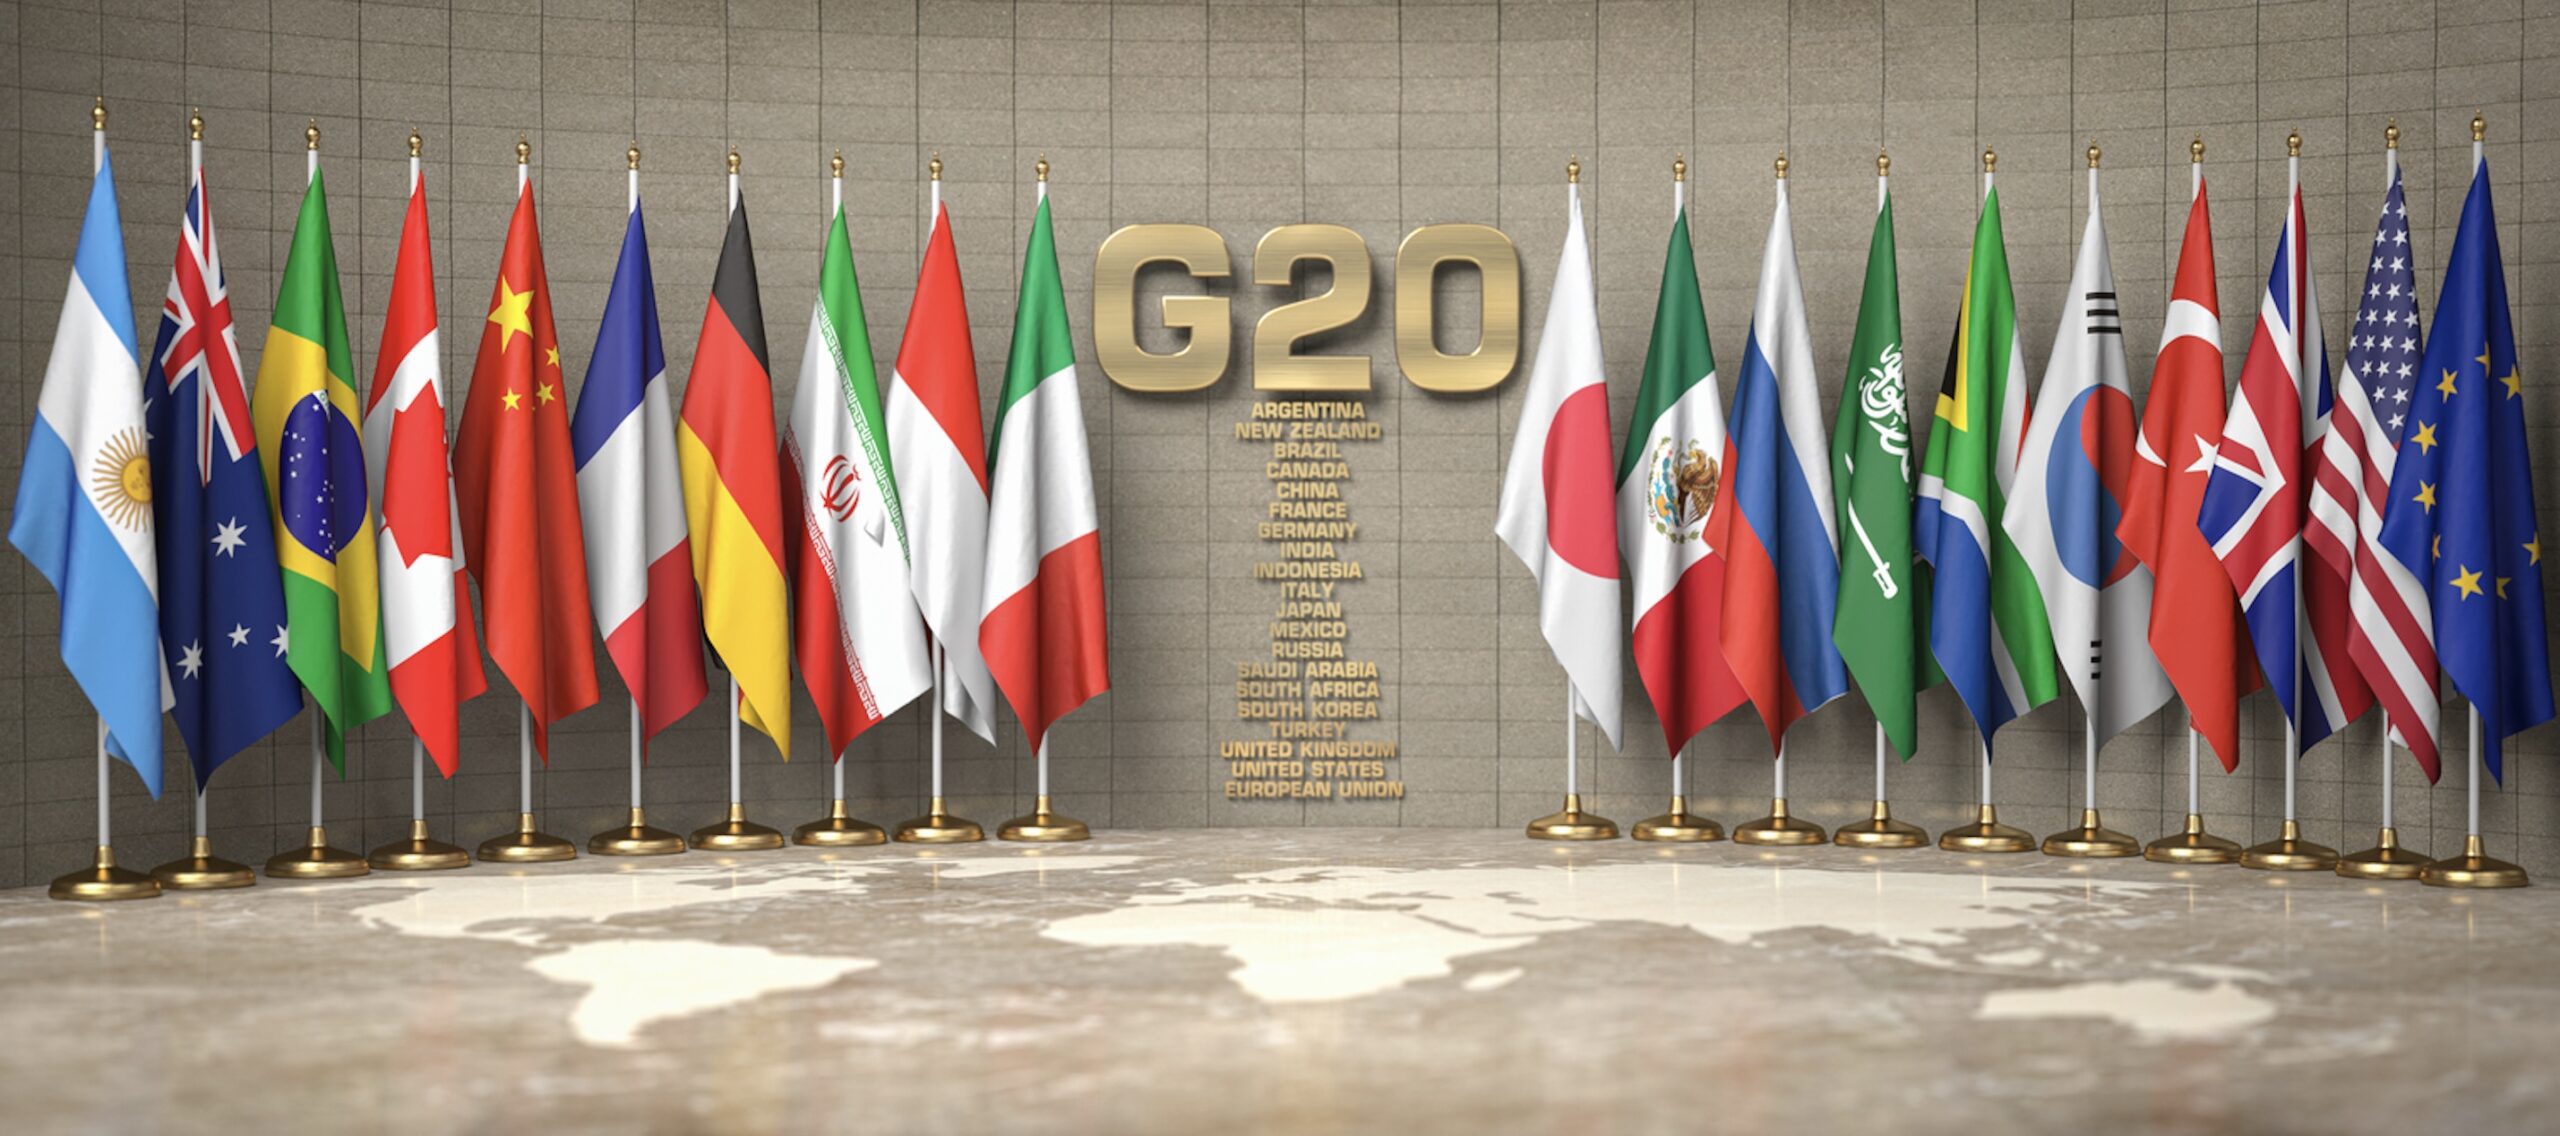 Най големите икономики в света известни като Г 20 проучват идеята за